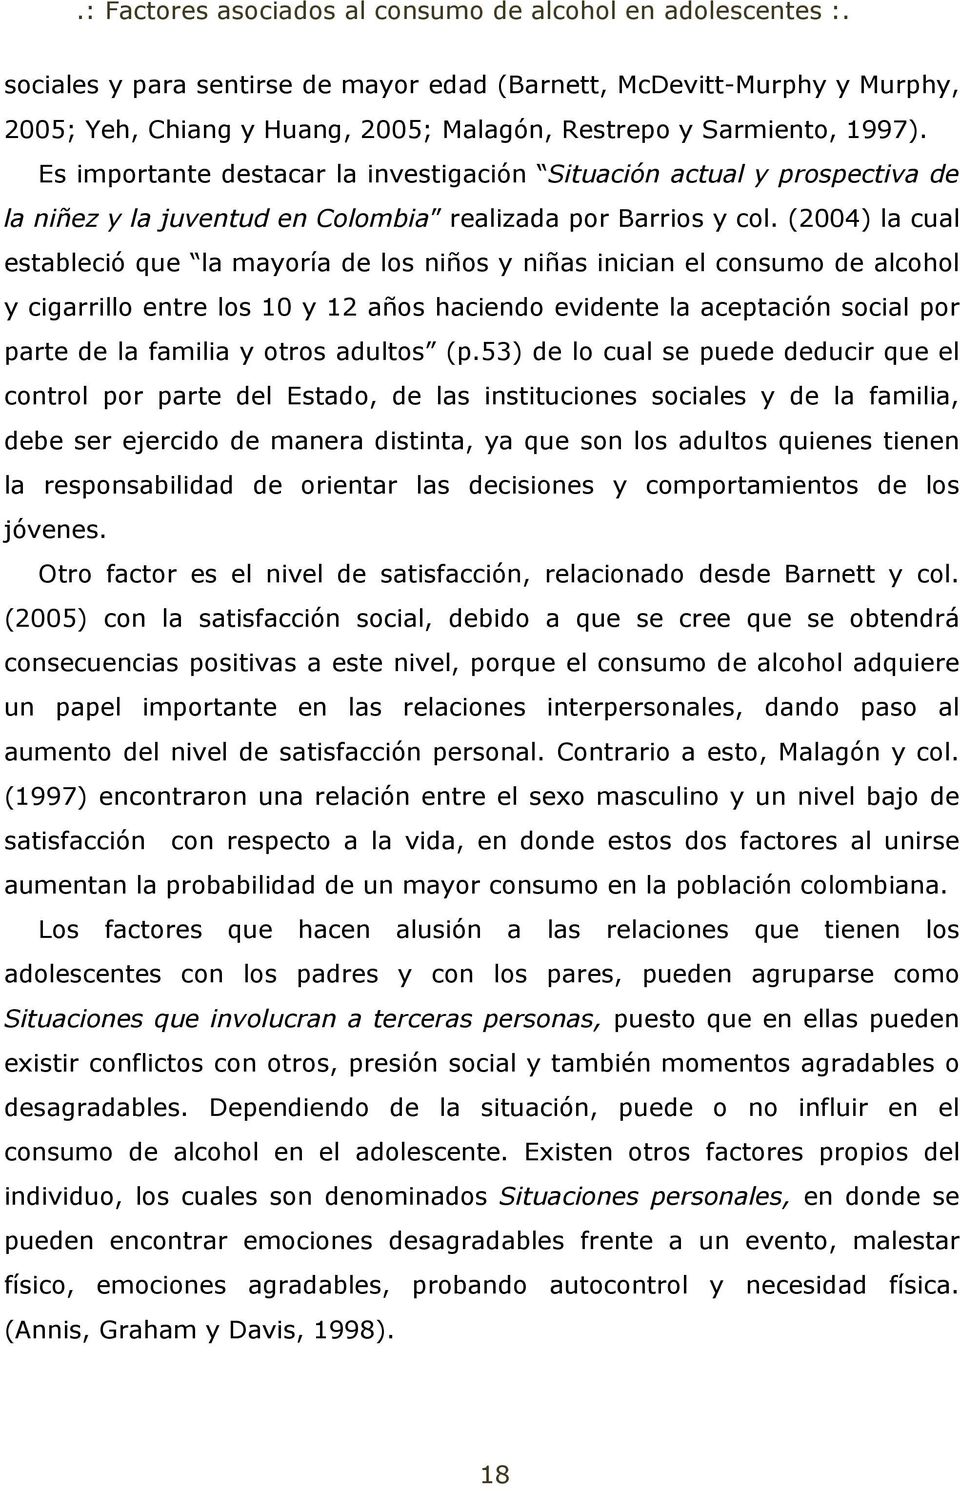 (2004) la cual estableció que la mayoría de los niños y niñas inician el consumo de alcohol y cigarrillo entre los 10 y 12 años haciendo evidente la aceptación social por parte de la familia y otros